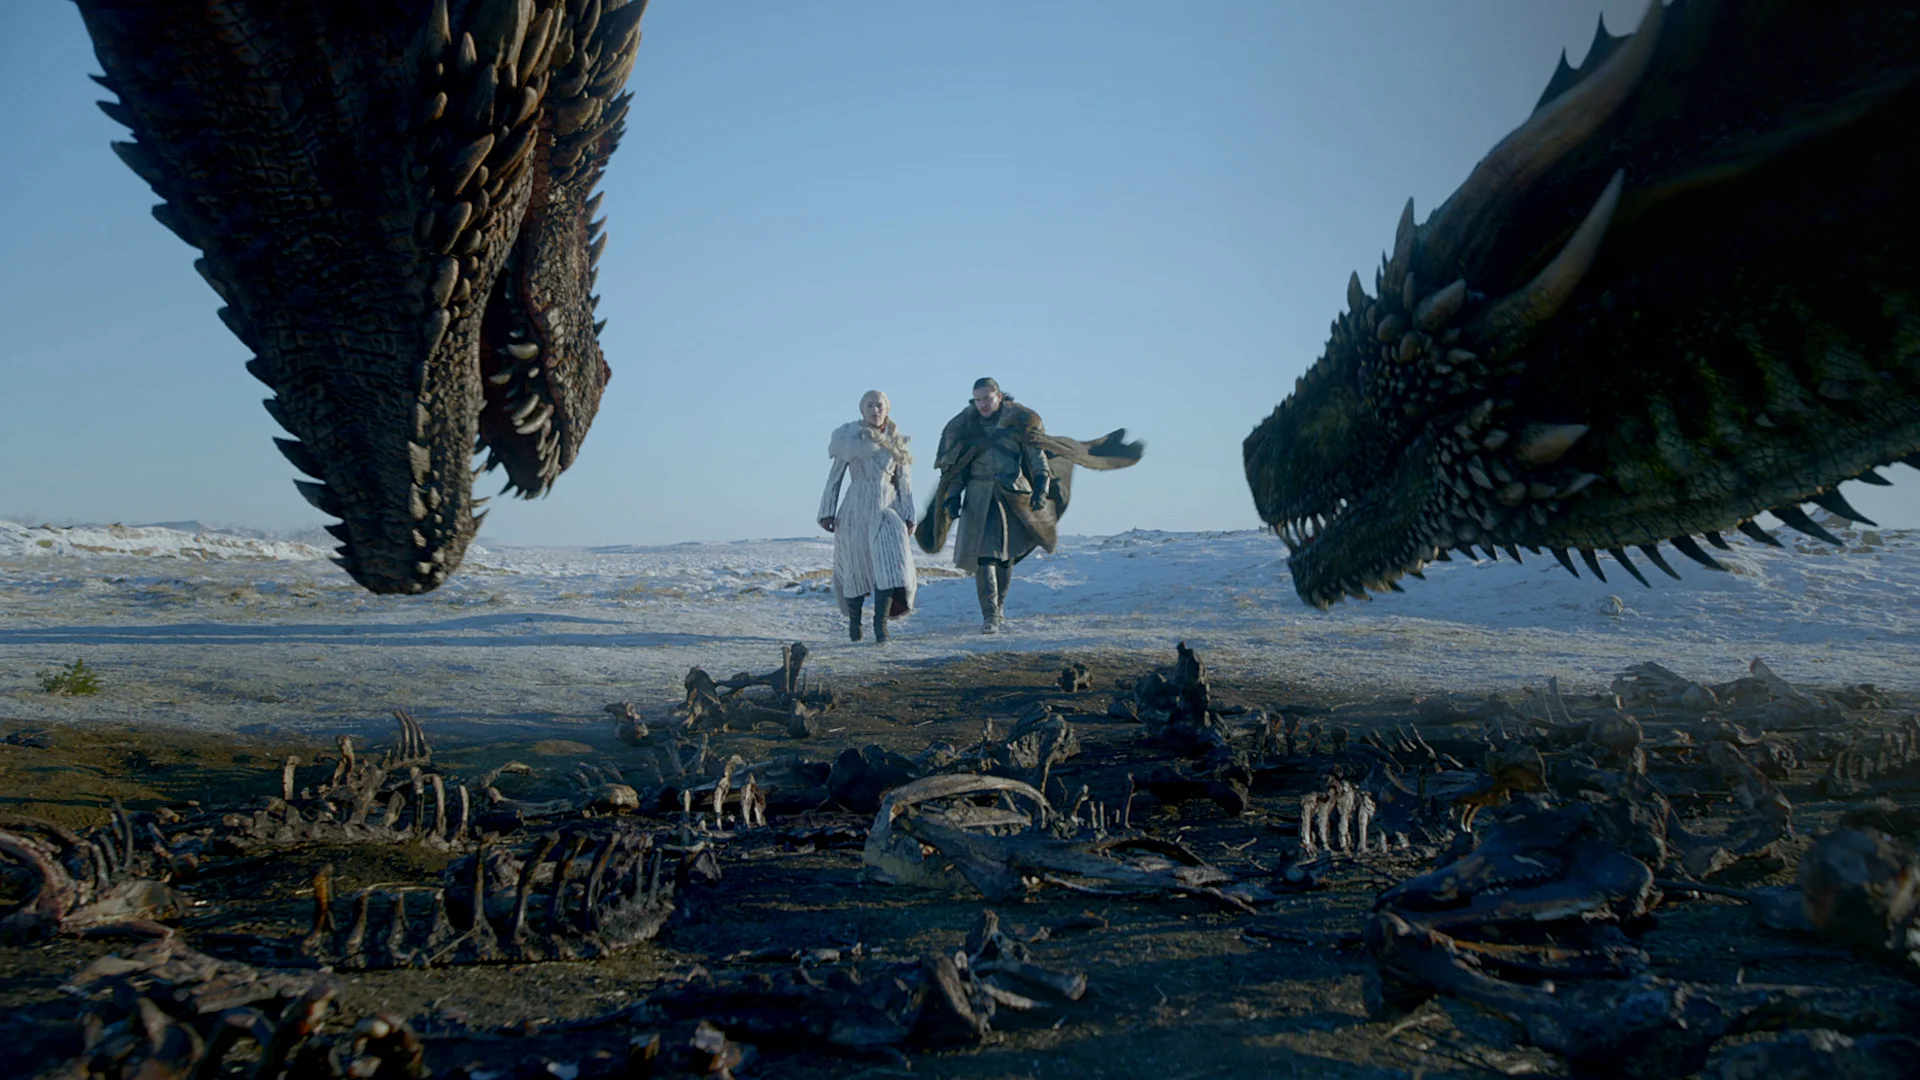 Премьера восьмого сезона «Игры престолов» поставила рекорд для канала HBO - фото 1